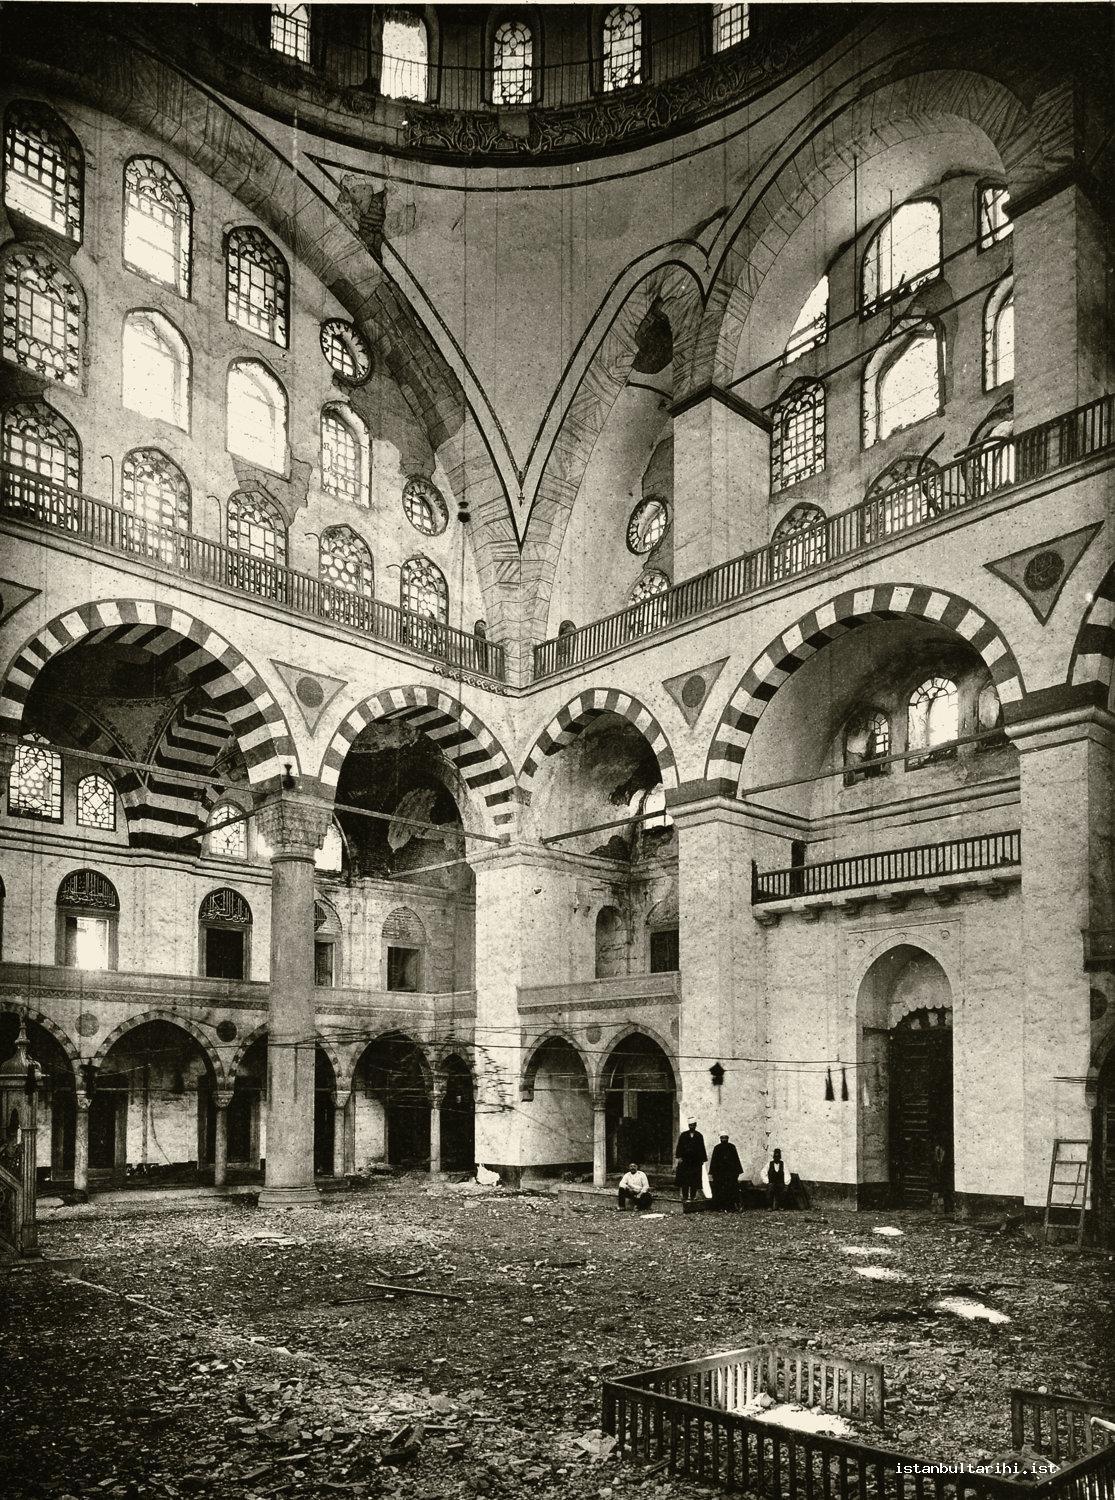 15- Inside Edirnakapı Mihrimah Sultan Mosque after an earthquake (Gurlitt)